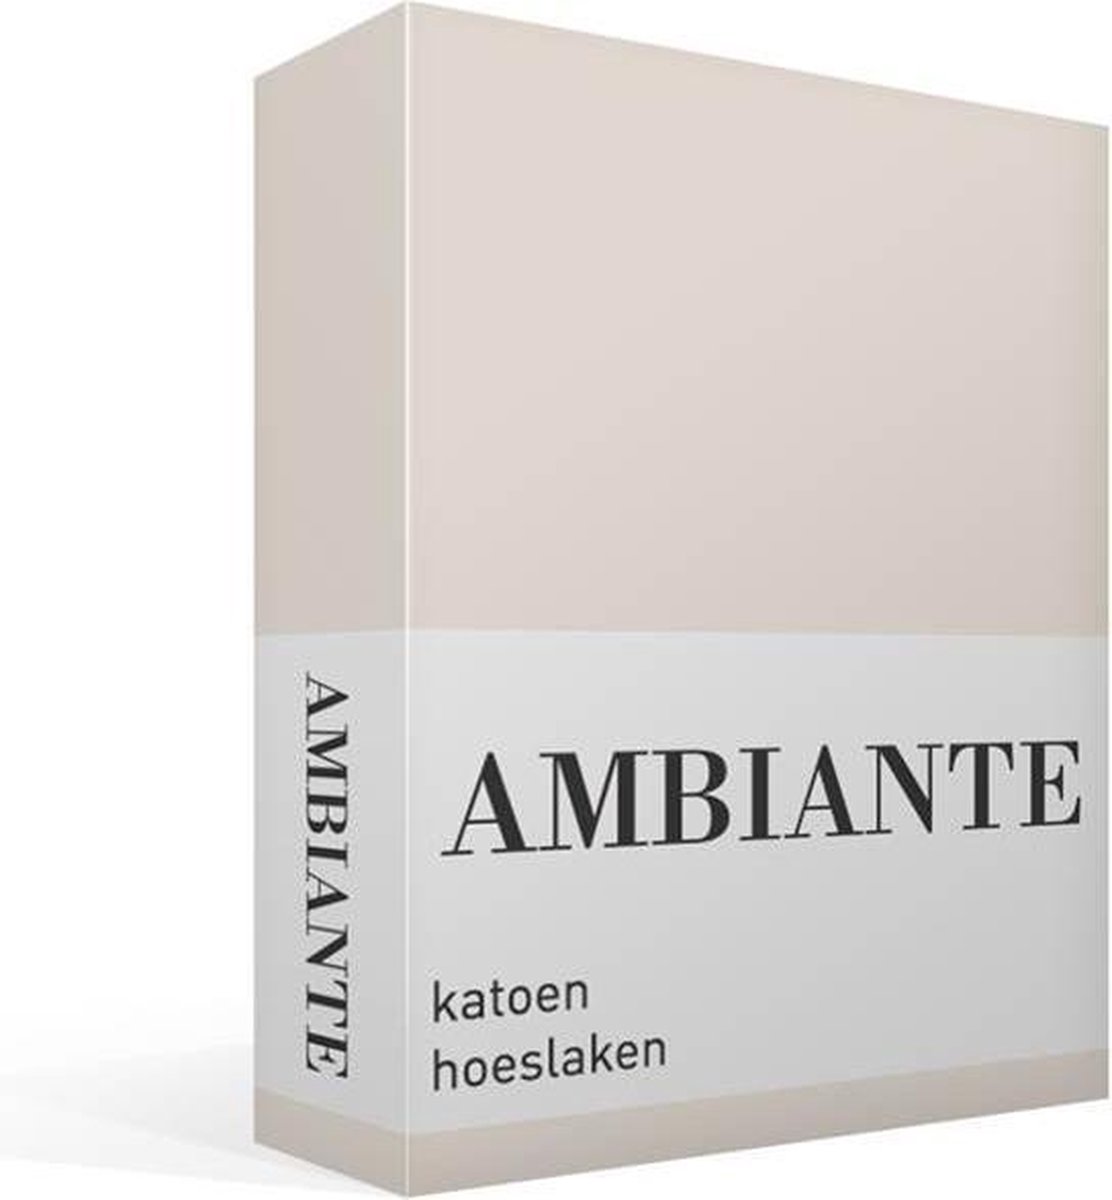 AMBIANTE Hoeslaken Katoen Sand-lits-jumeaux (180x200 Cm) - Beige